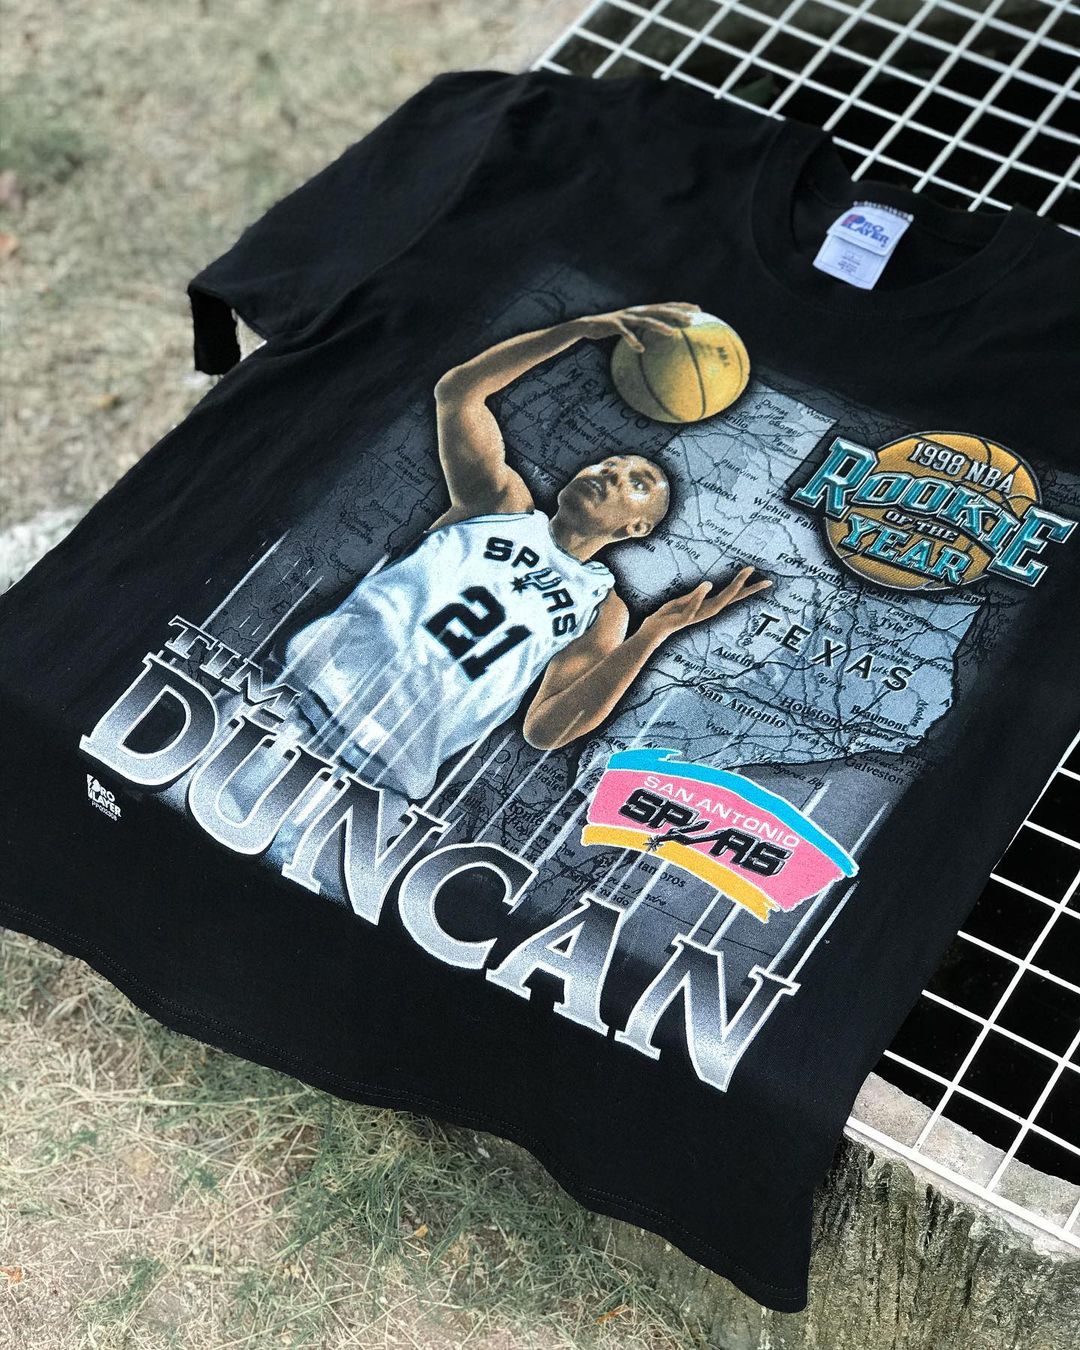 蒂姆邓肯Timothy Duncan篮球运动员复古美式ing风嘻哈宽松短袖T恤